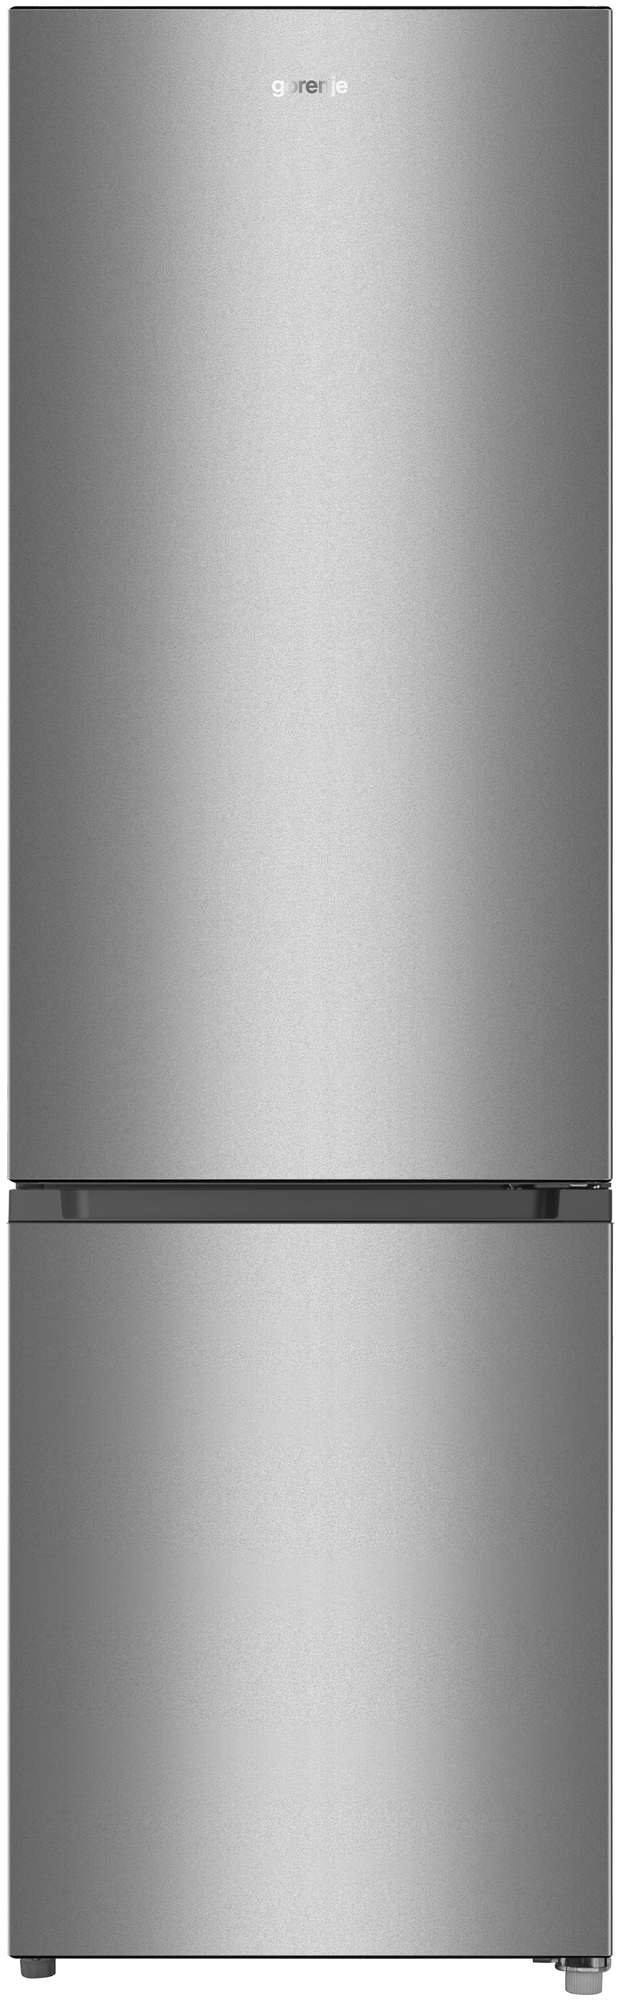 Холодильник Gorenje RK 4181 PS4, серый — купить в интернет-магазине по низкой цене на Яндекс Маркете